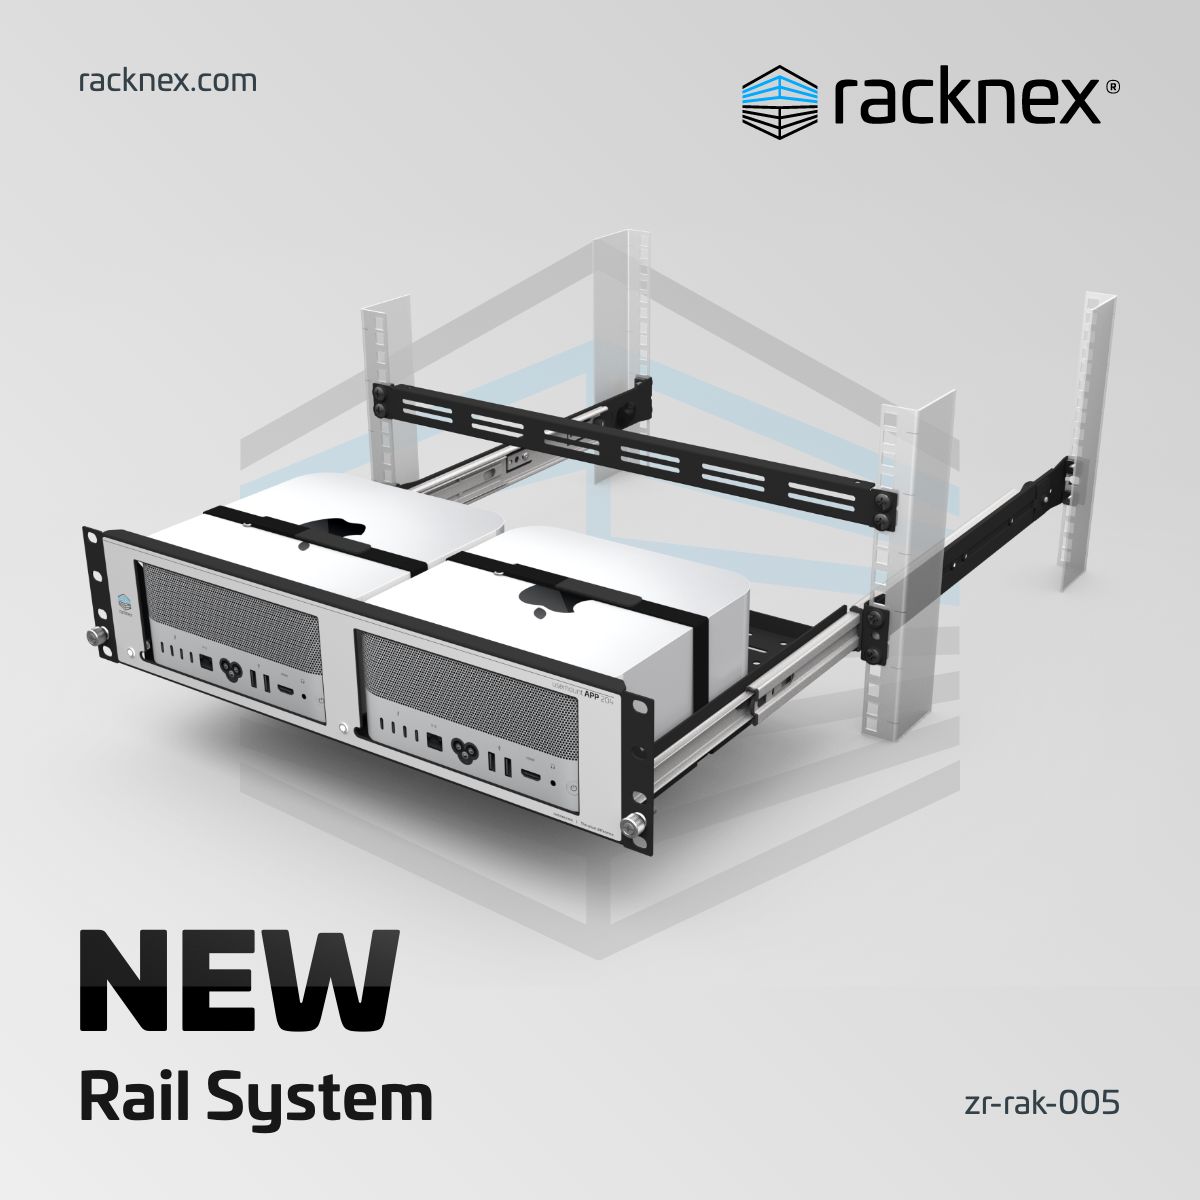 New Rail System - racknex